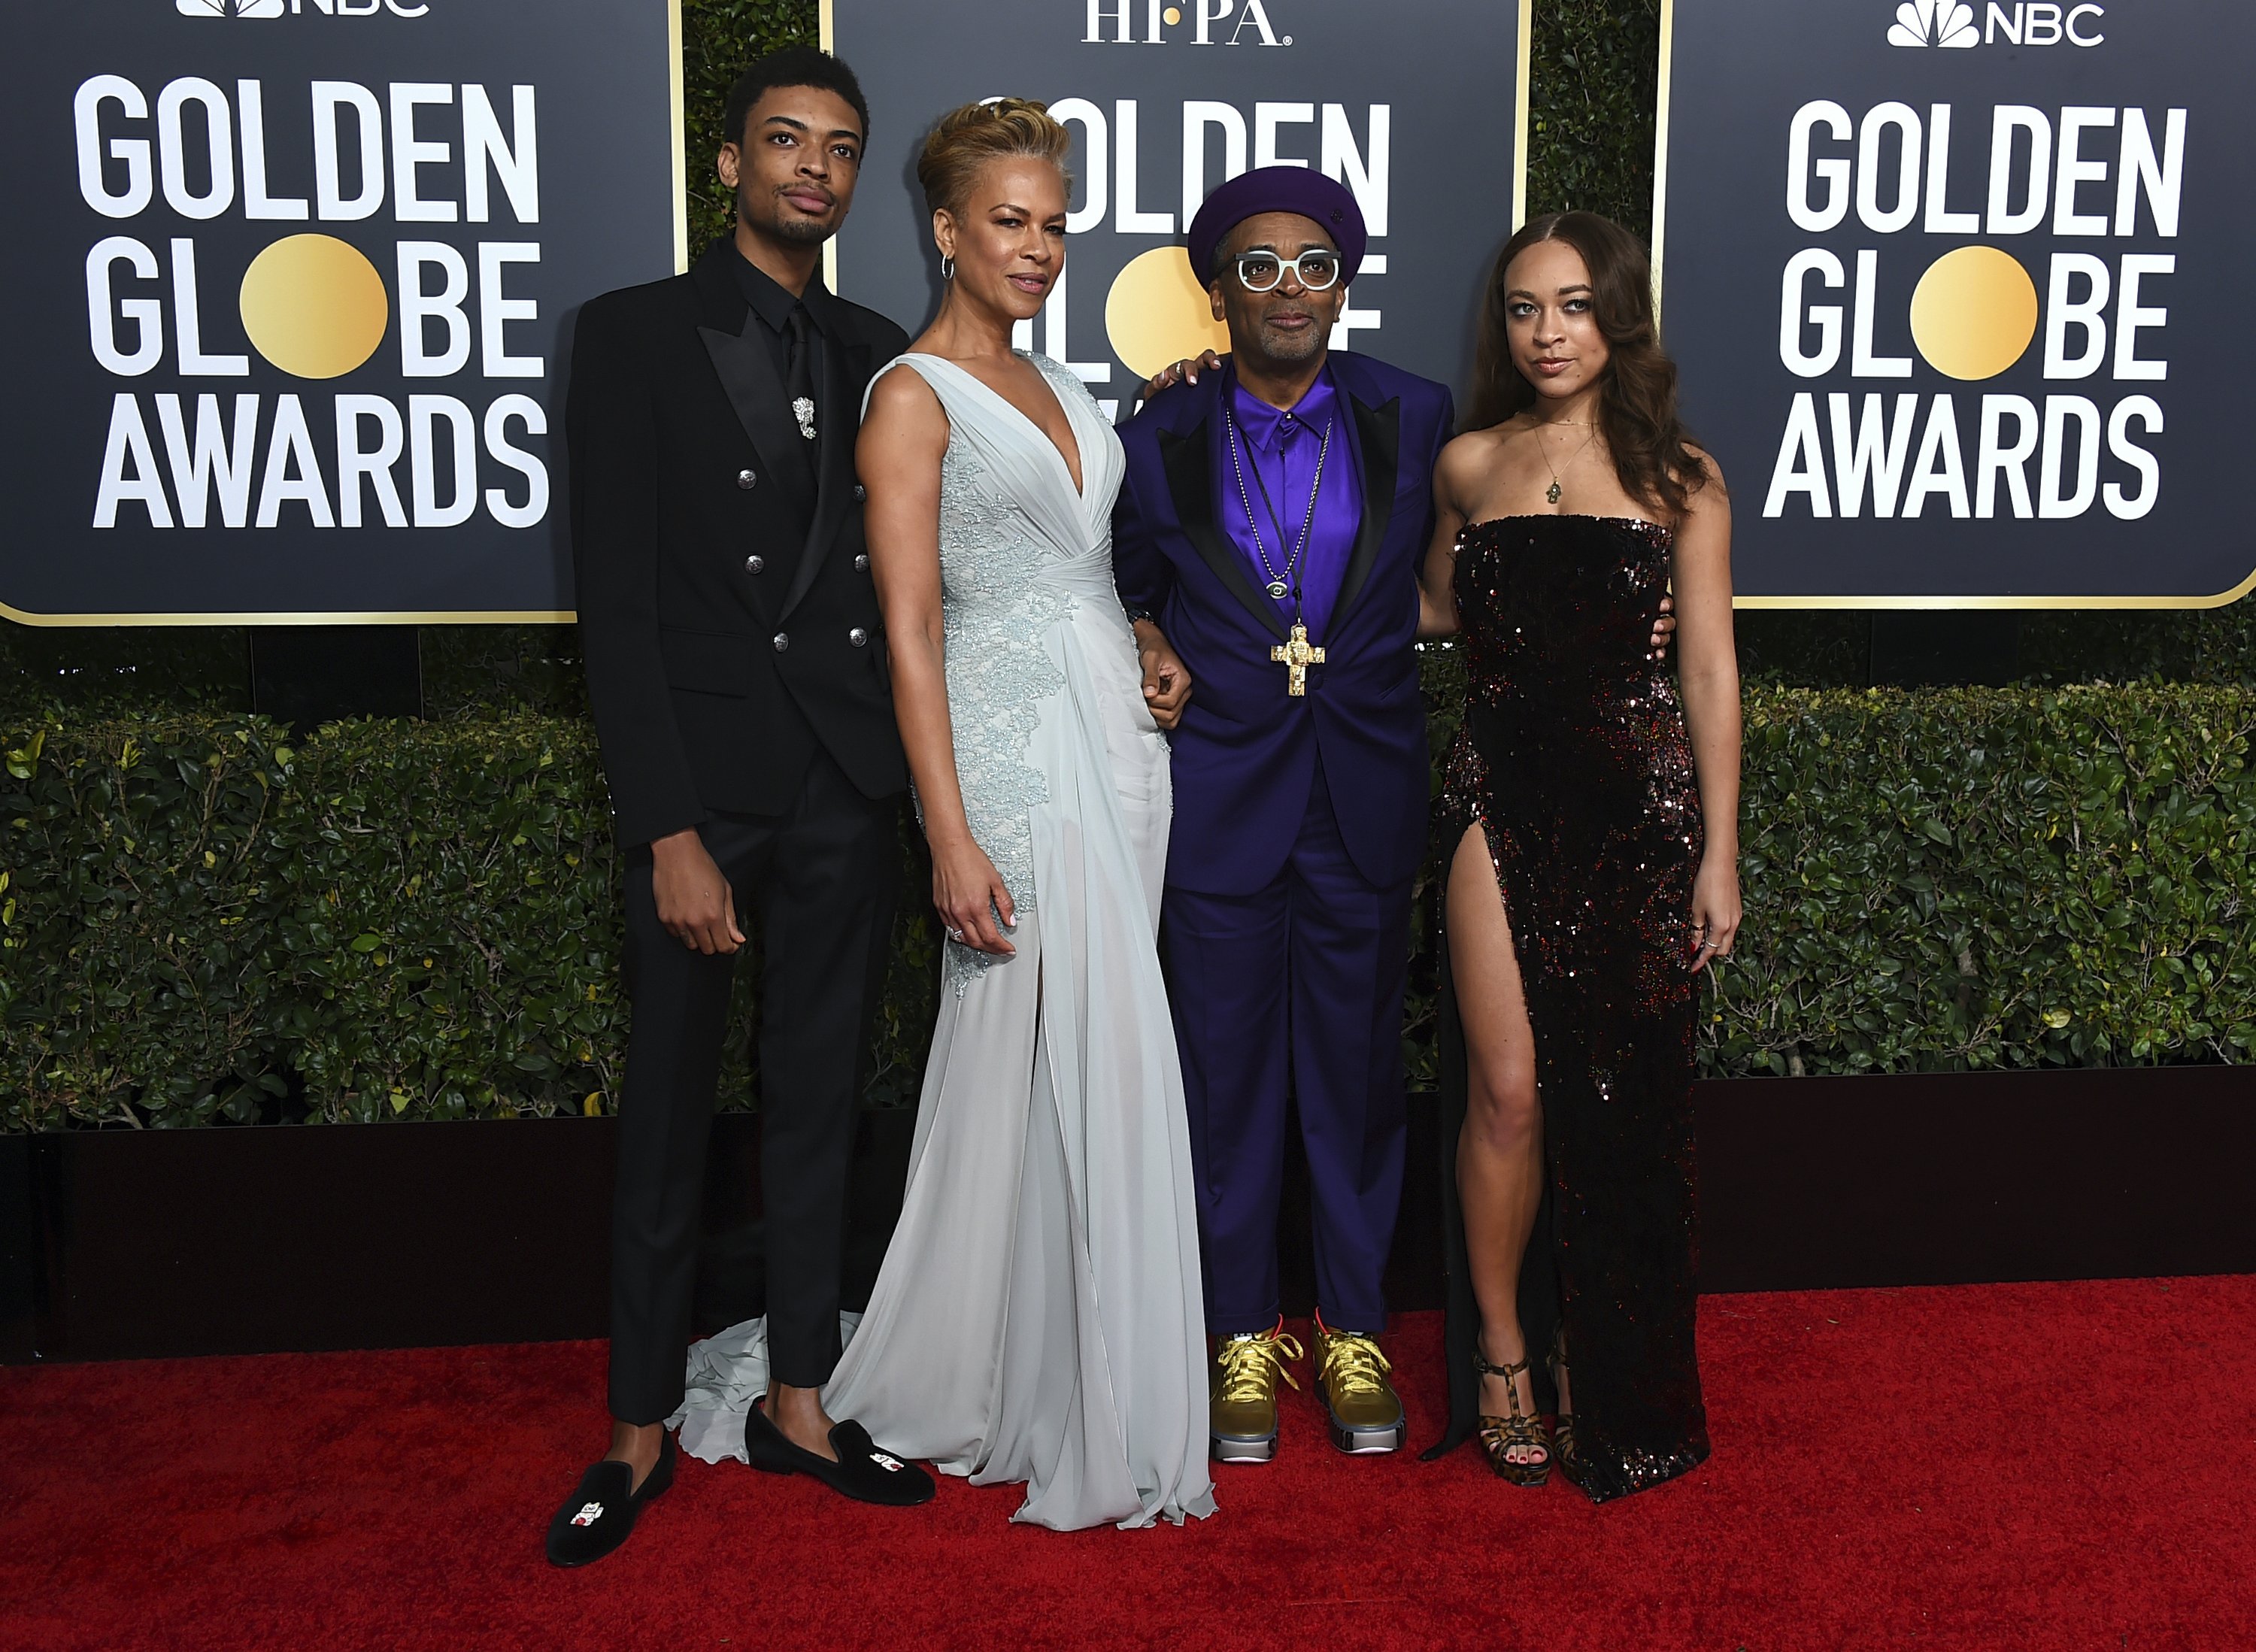 Spike Lee’s children named Golden Globe ambassadors